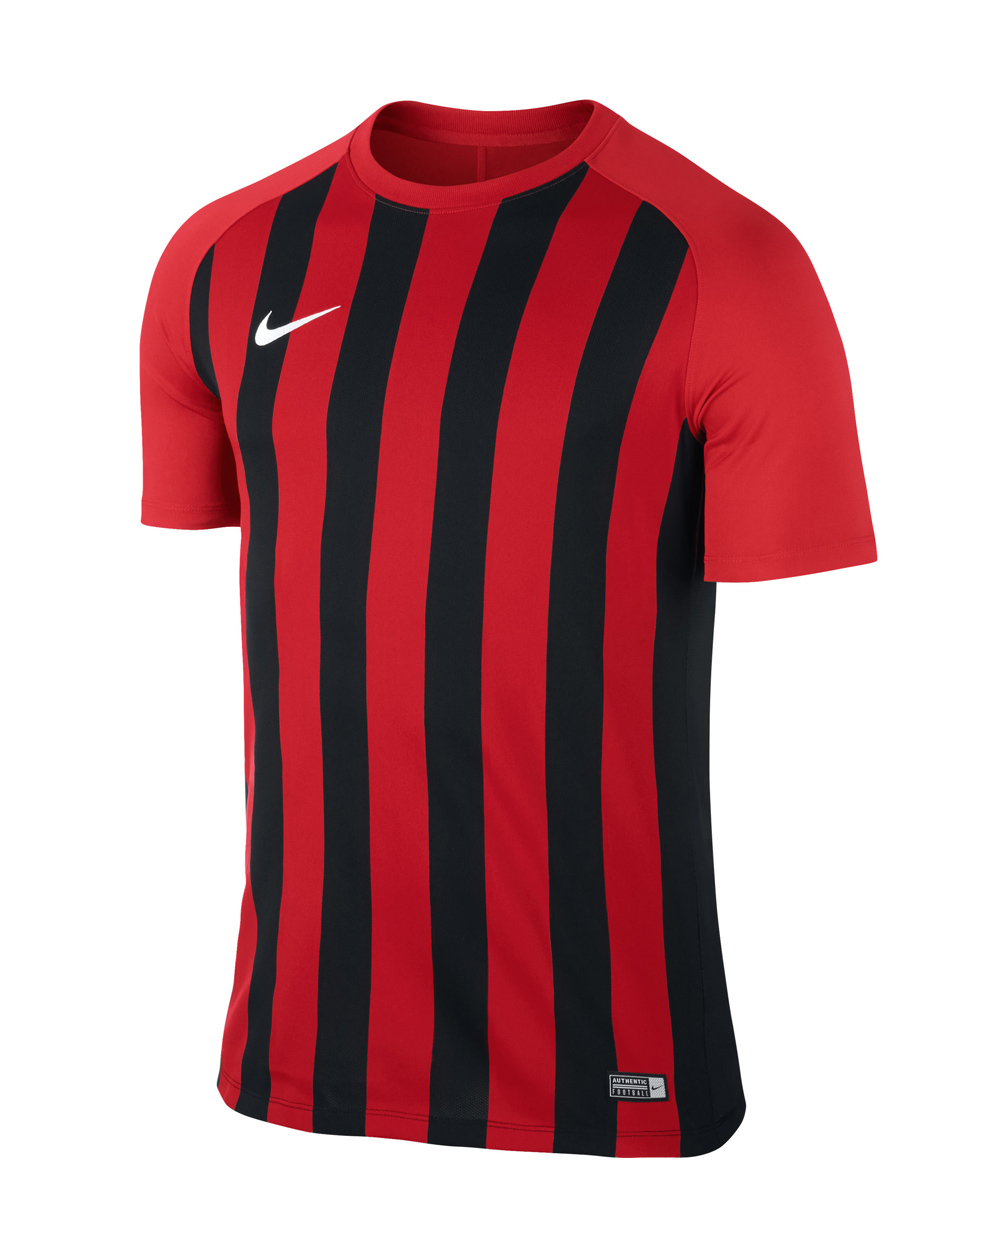 camiseta roja y negra futbol